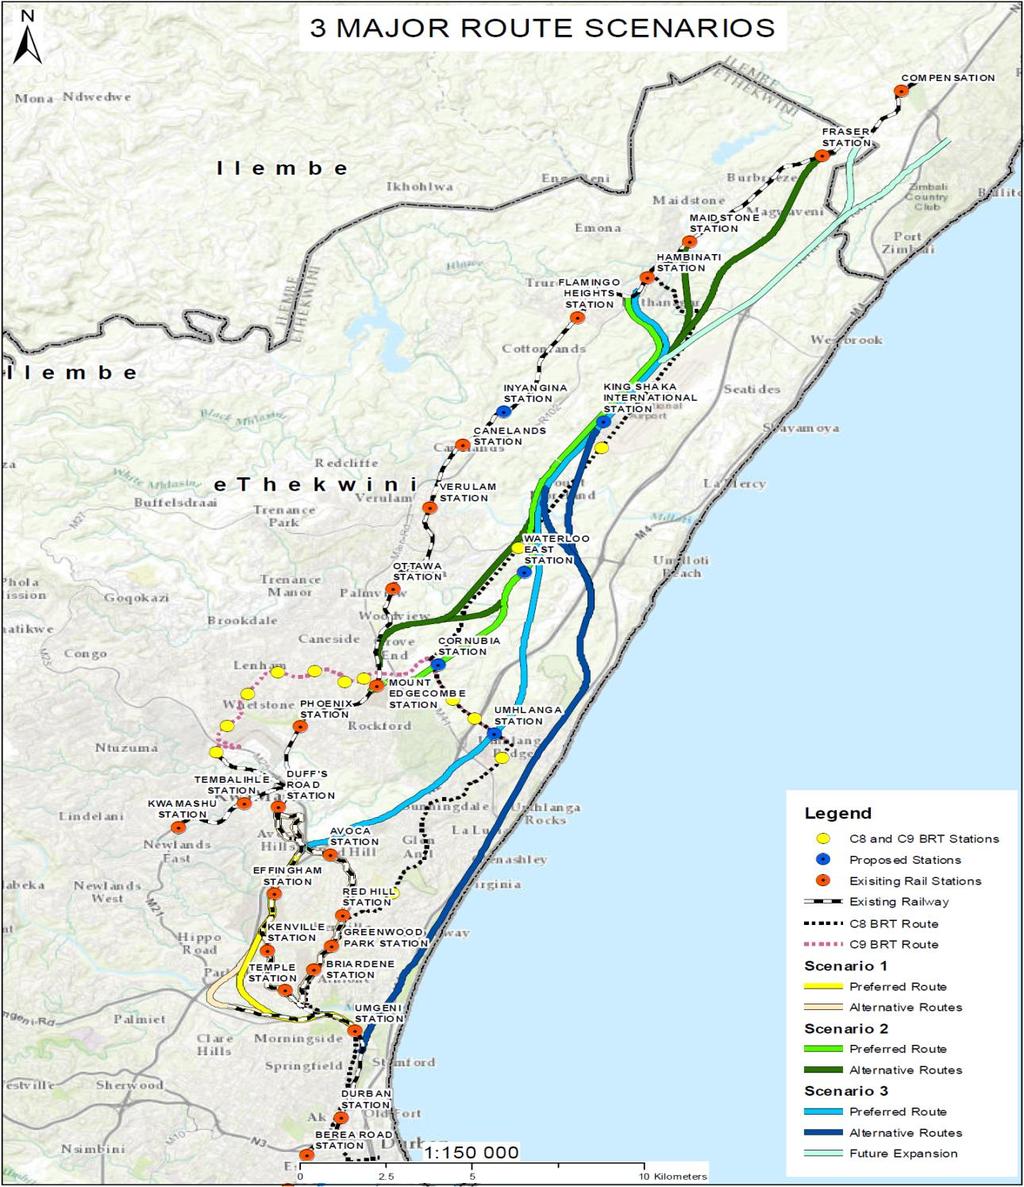 Rail Route Options/Scenarios